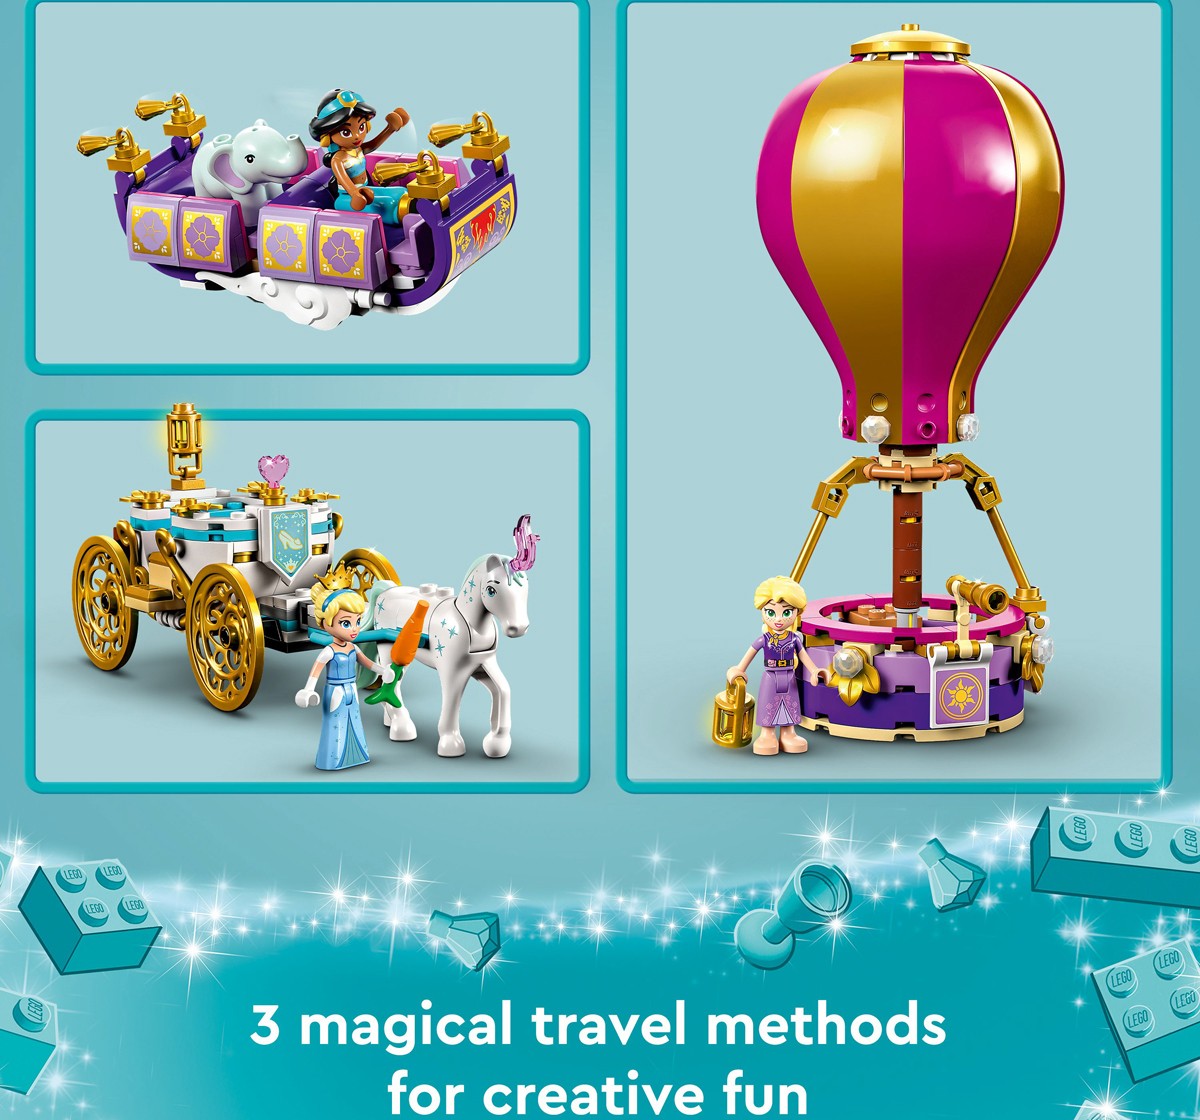 LEGO Disney Princess Enchanted Journey 43216 Building Toy Set 320 Pcs Multicolour 6Y+